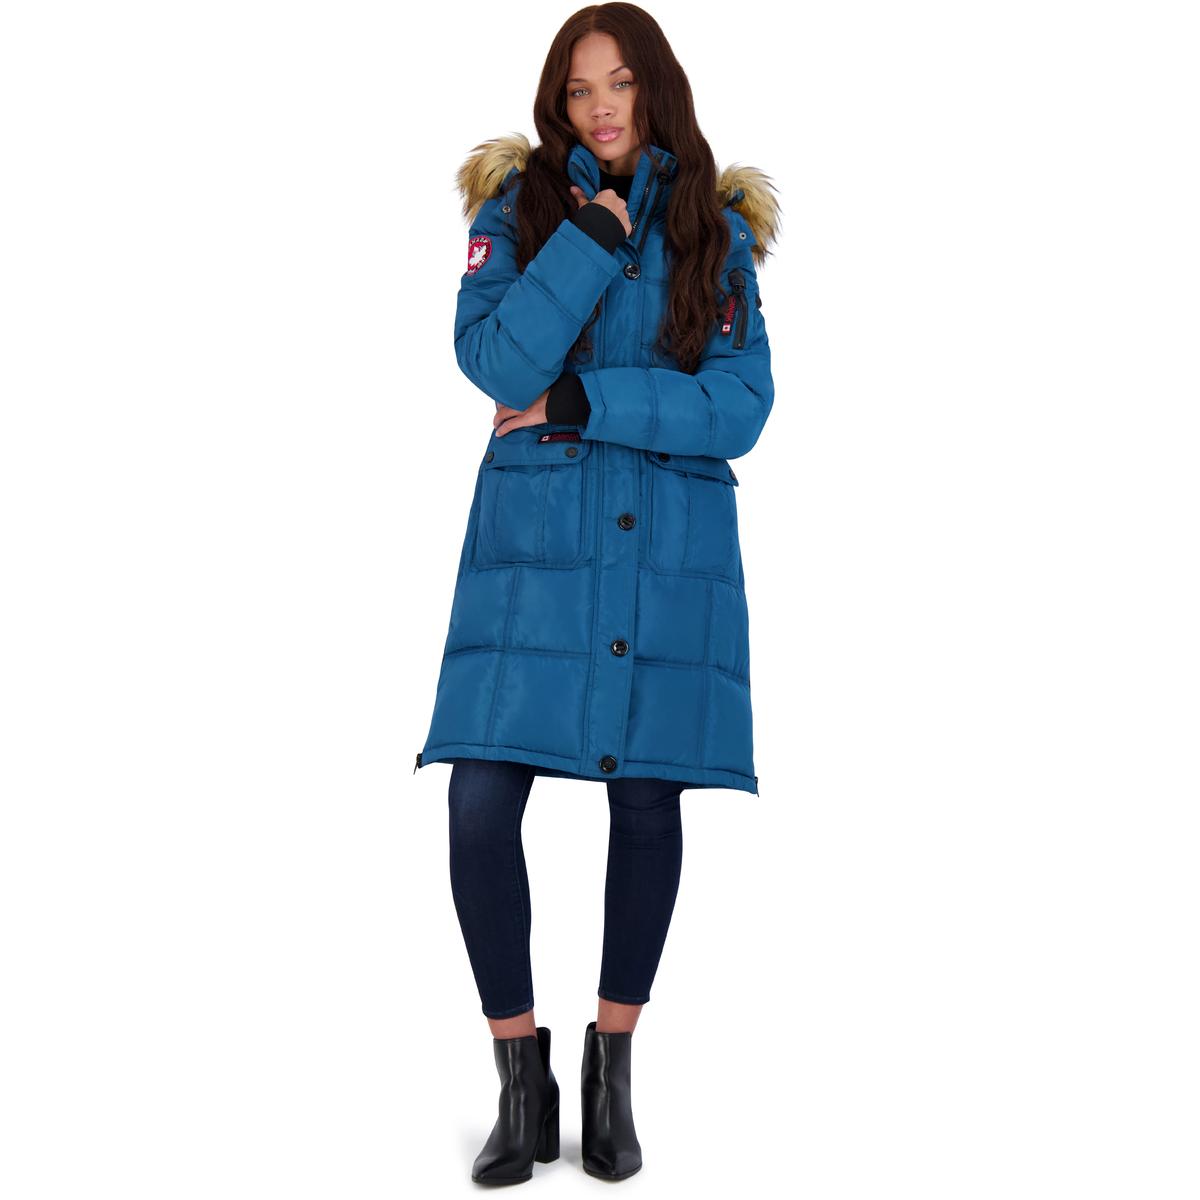  CANADA WEATHER GEAR Women's Faux Fur Winter Parka/Coat